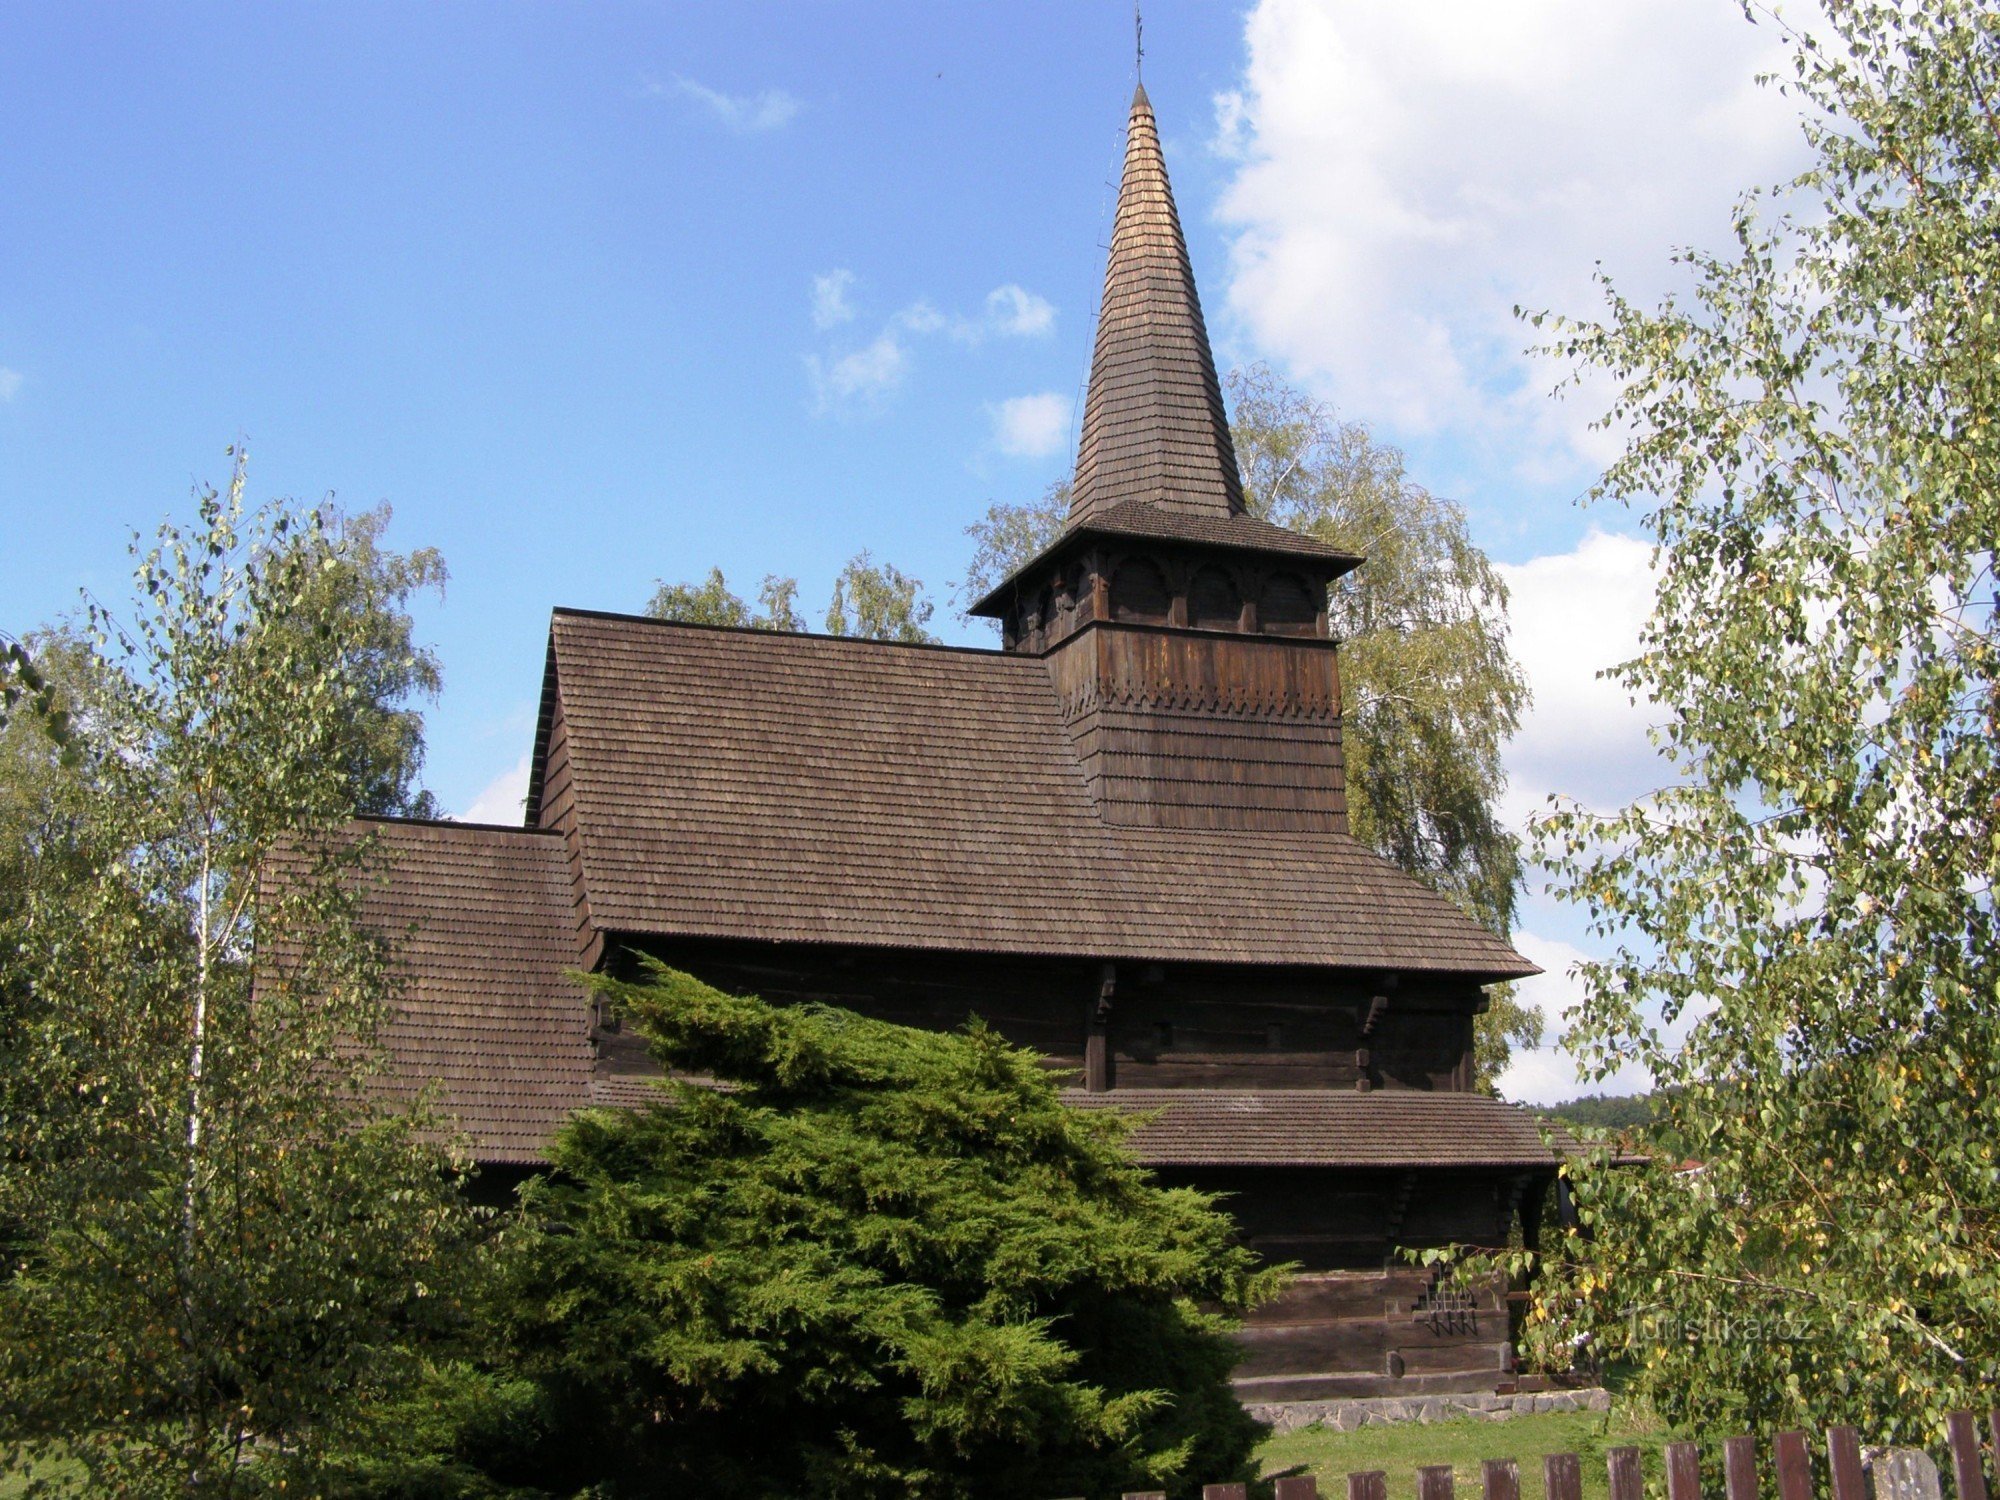 Dobříkov - église en bois de Tous les Saints